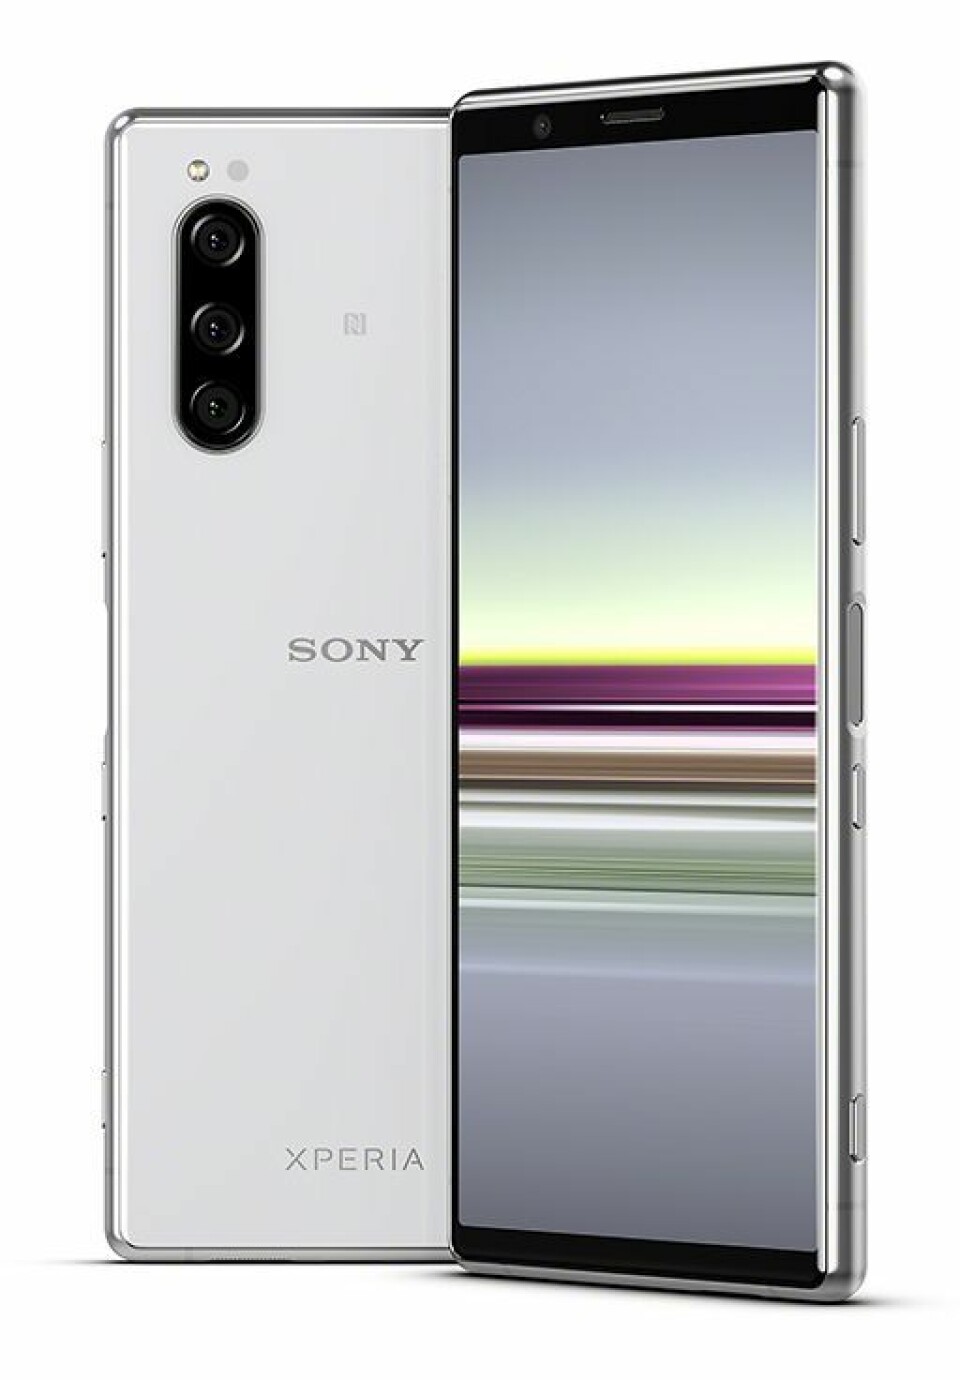 Sony Xperia 5 har samme spesifikasjoner som Xperia 1, med er med sin skjerm på 6,1 tommer og bredde på 68 mm en kompakt modell. Pris: 8.000,- Foto: Sony.